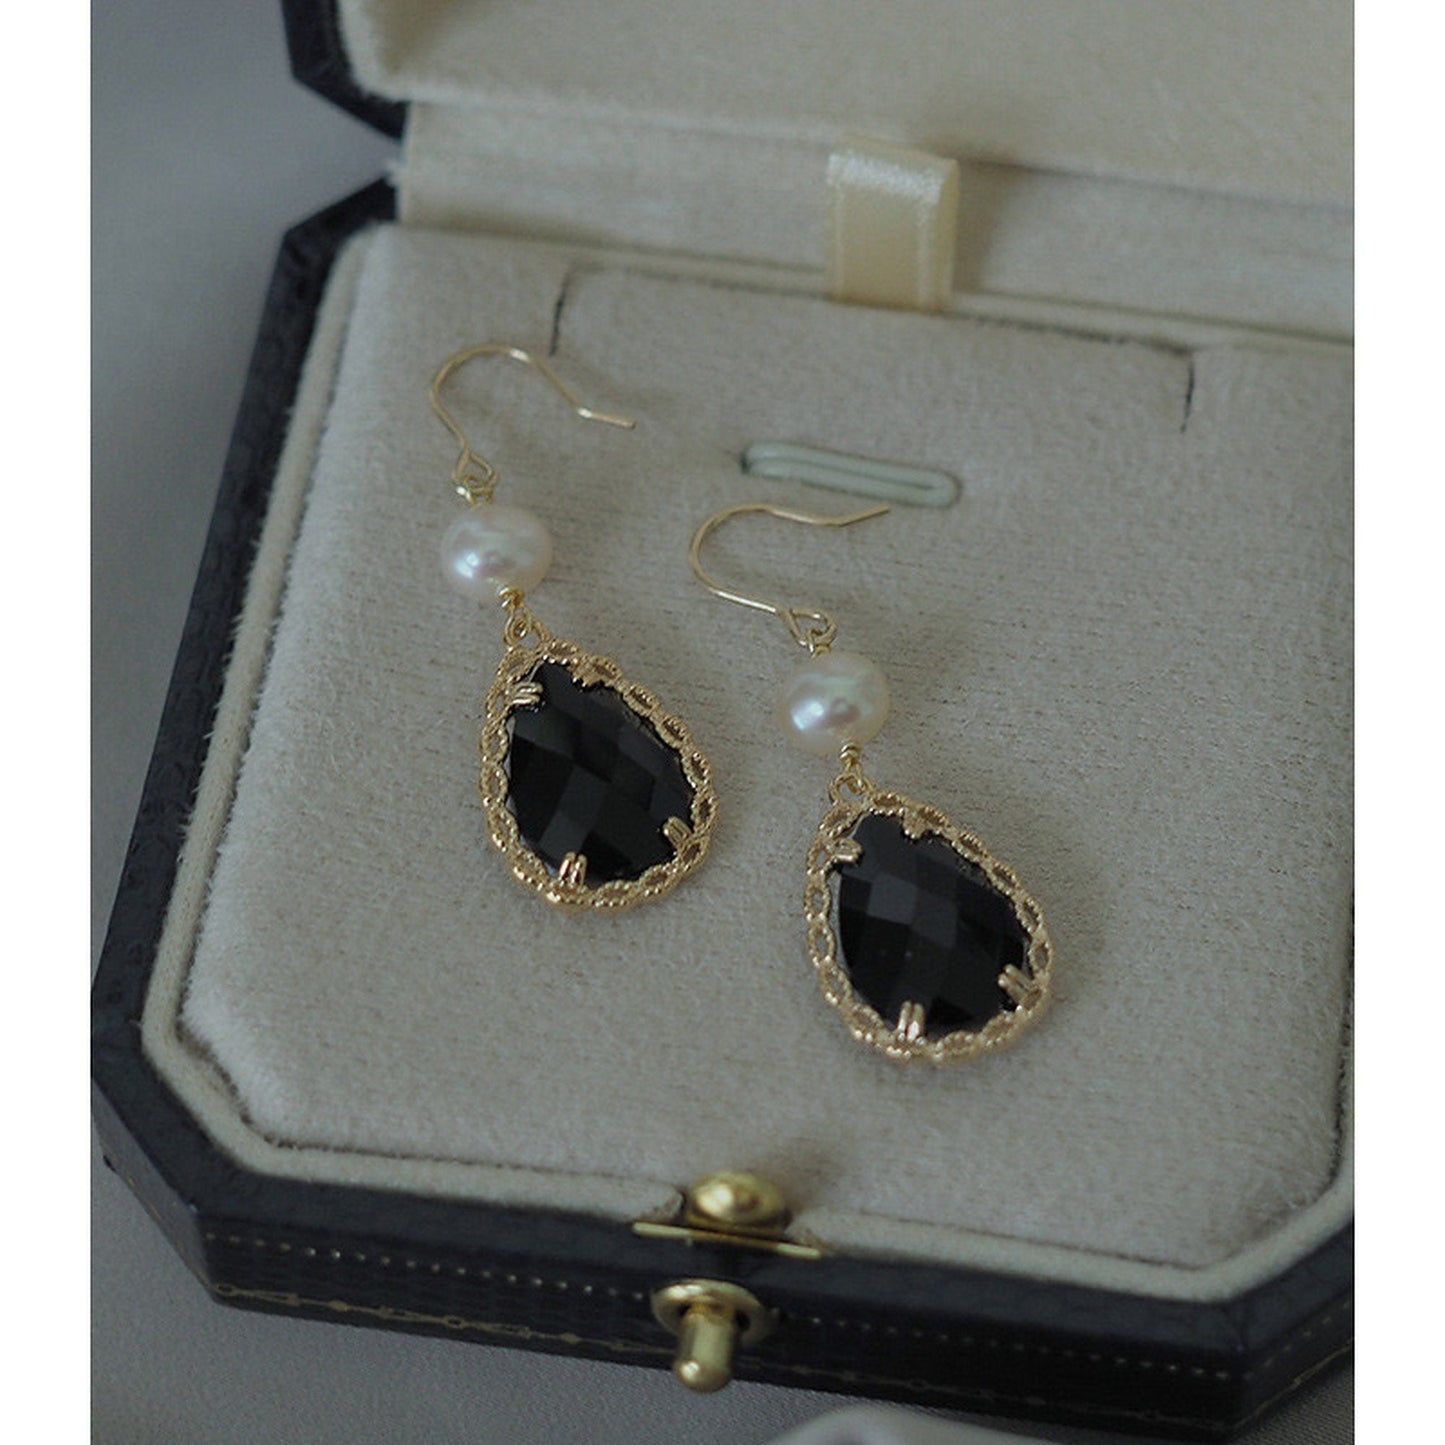 Gothic Black Earrings, Natural Pearl Earrings, 14K Gold Lace Earrings, Vintage Gemstone Earrings, Teardrop Earrings, Handmade Delicate Gift